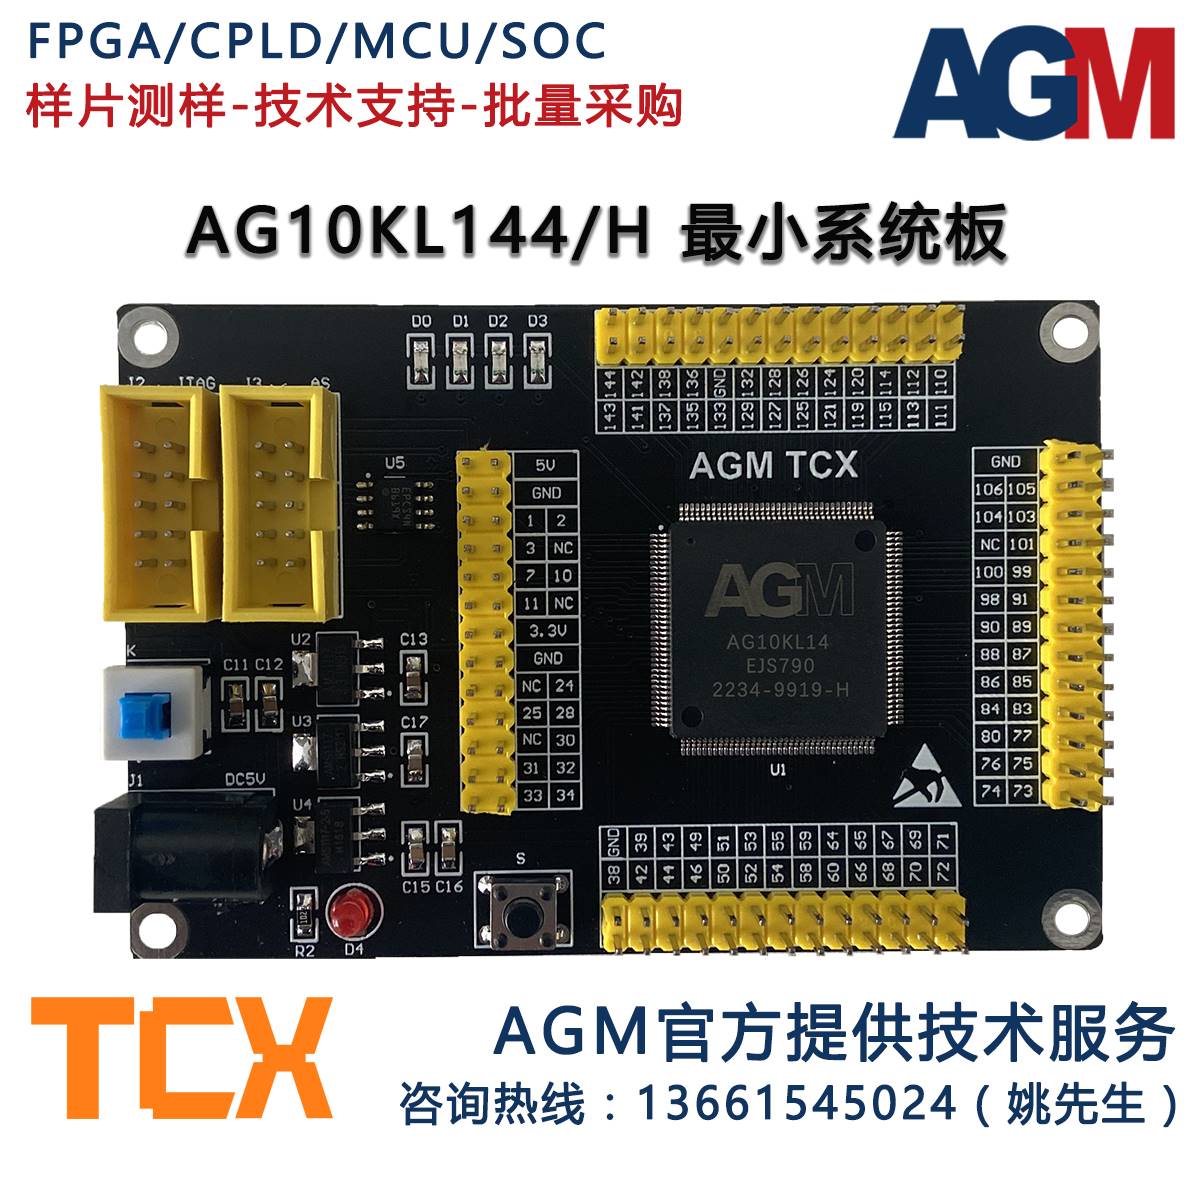 AGM FPGA AG10KL144H国产替代EP4CE10E22 EP3C10E144原厂开发板-图1